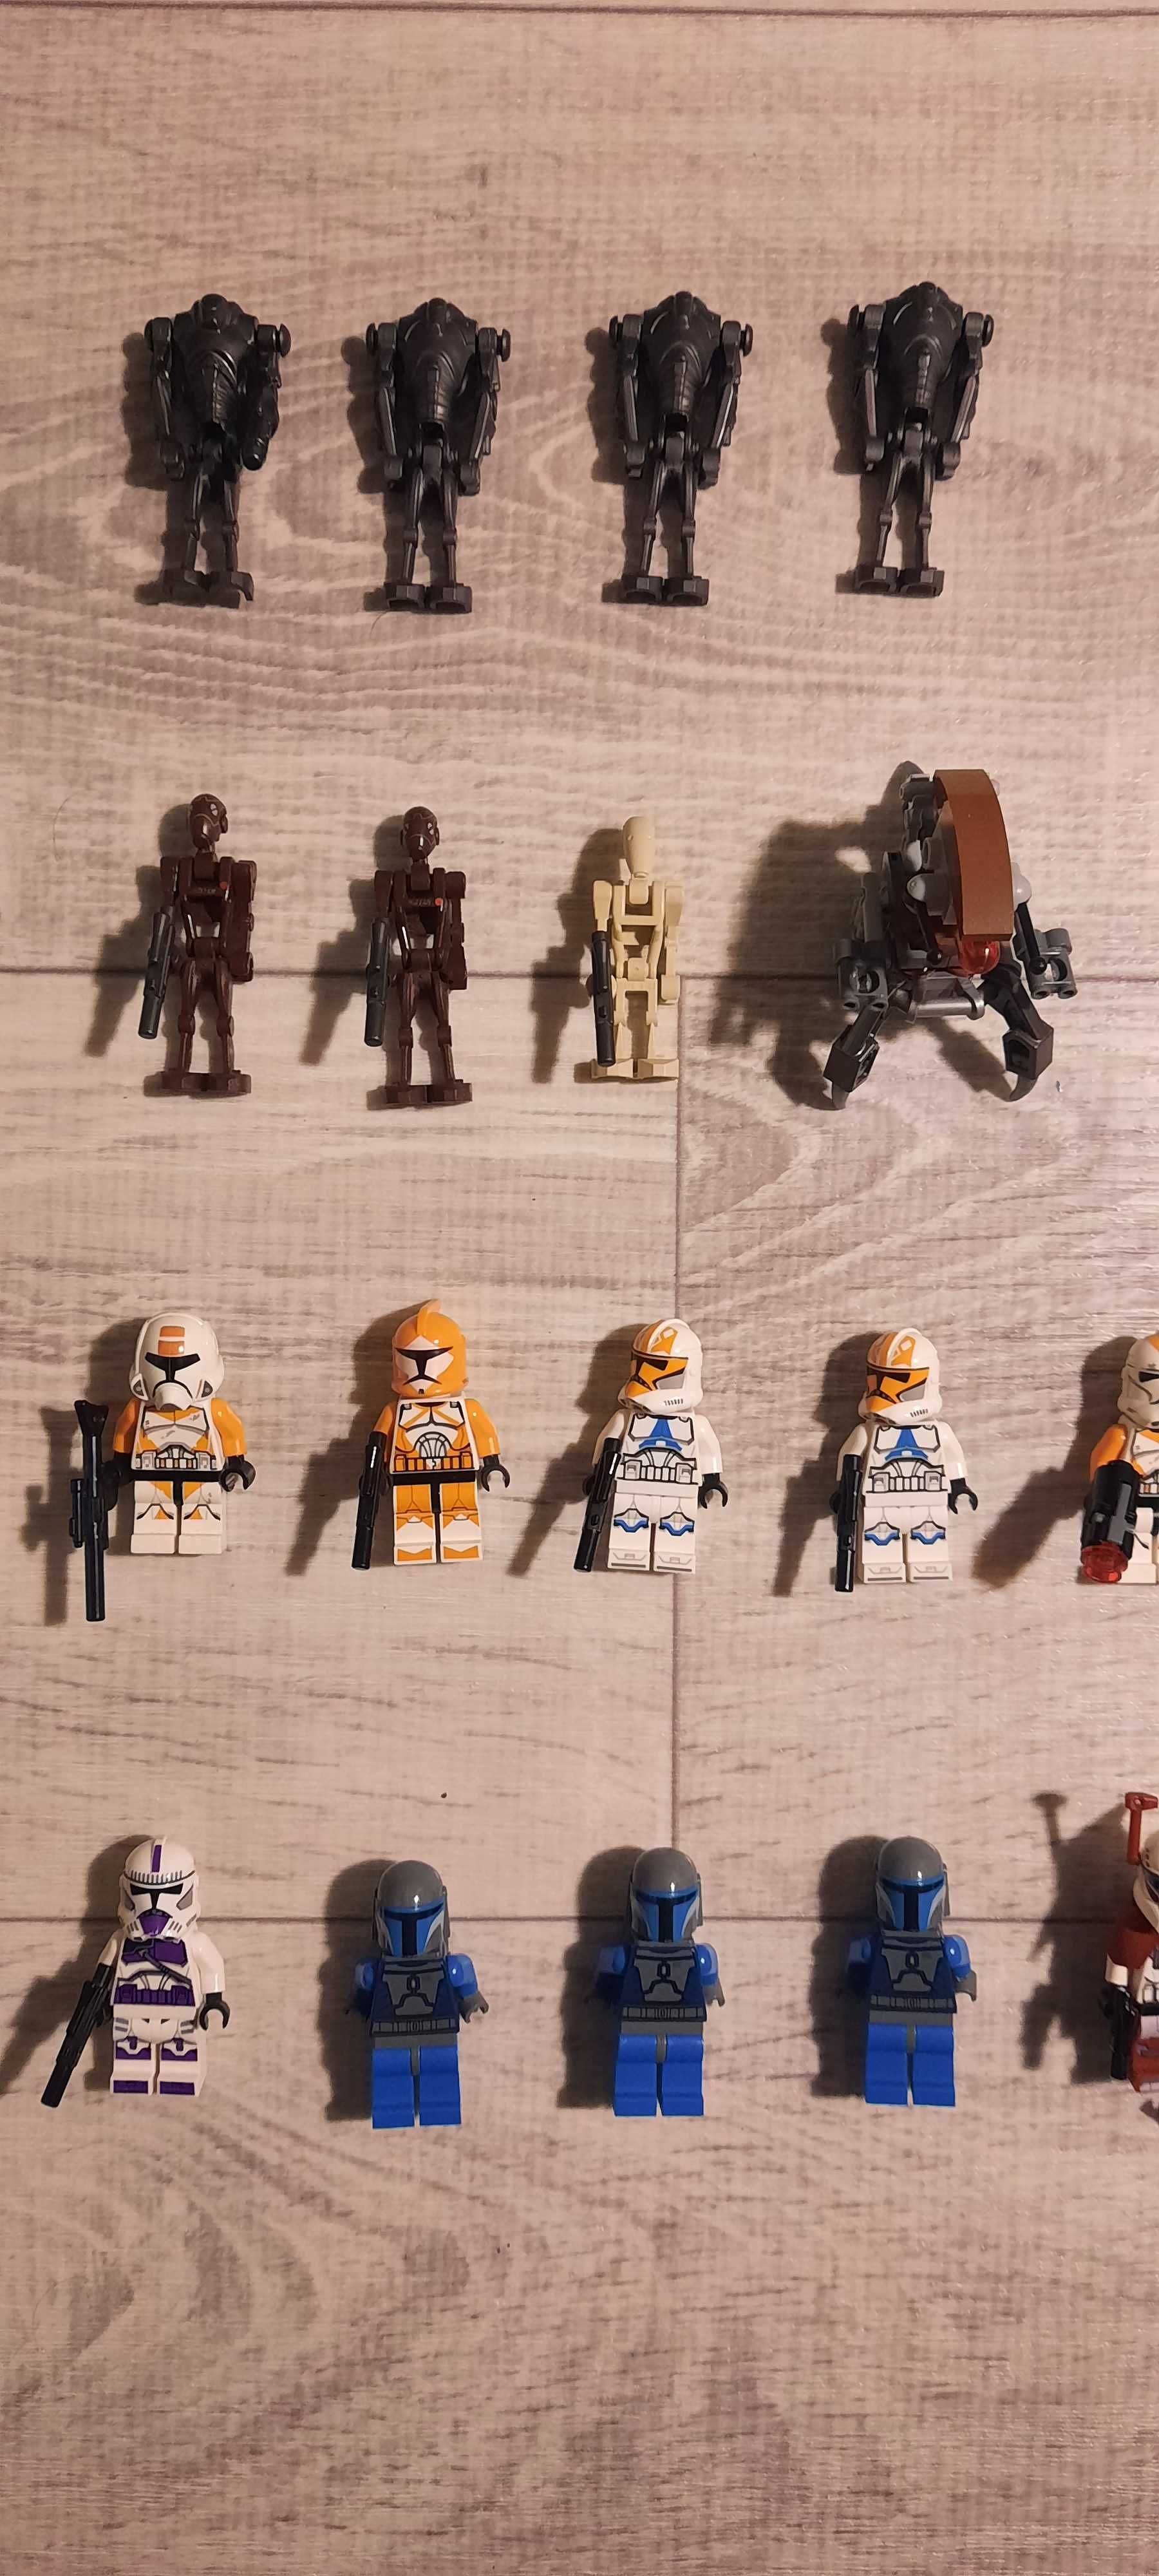 Lego Star Wars - Wiele figurek klonów, cennik w środku